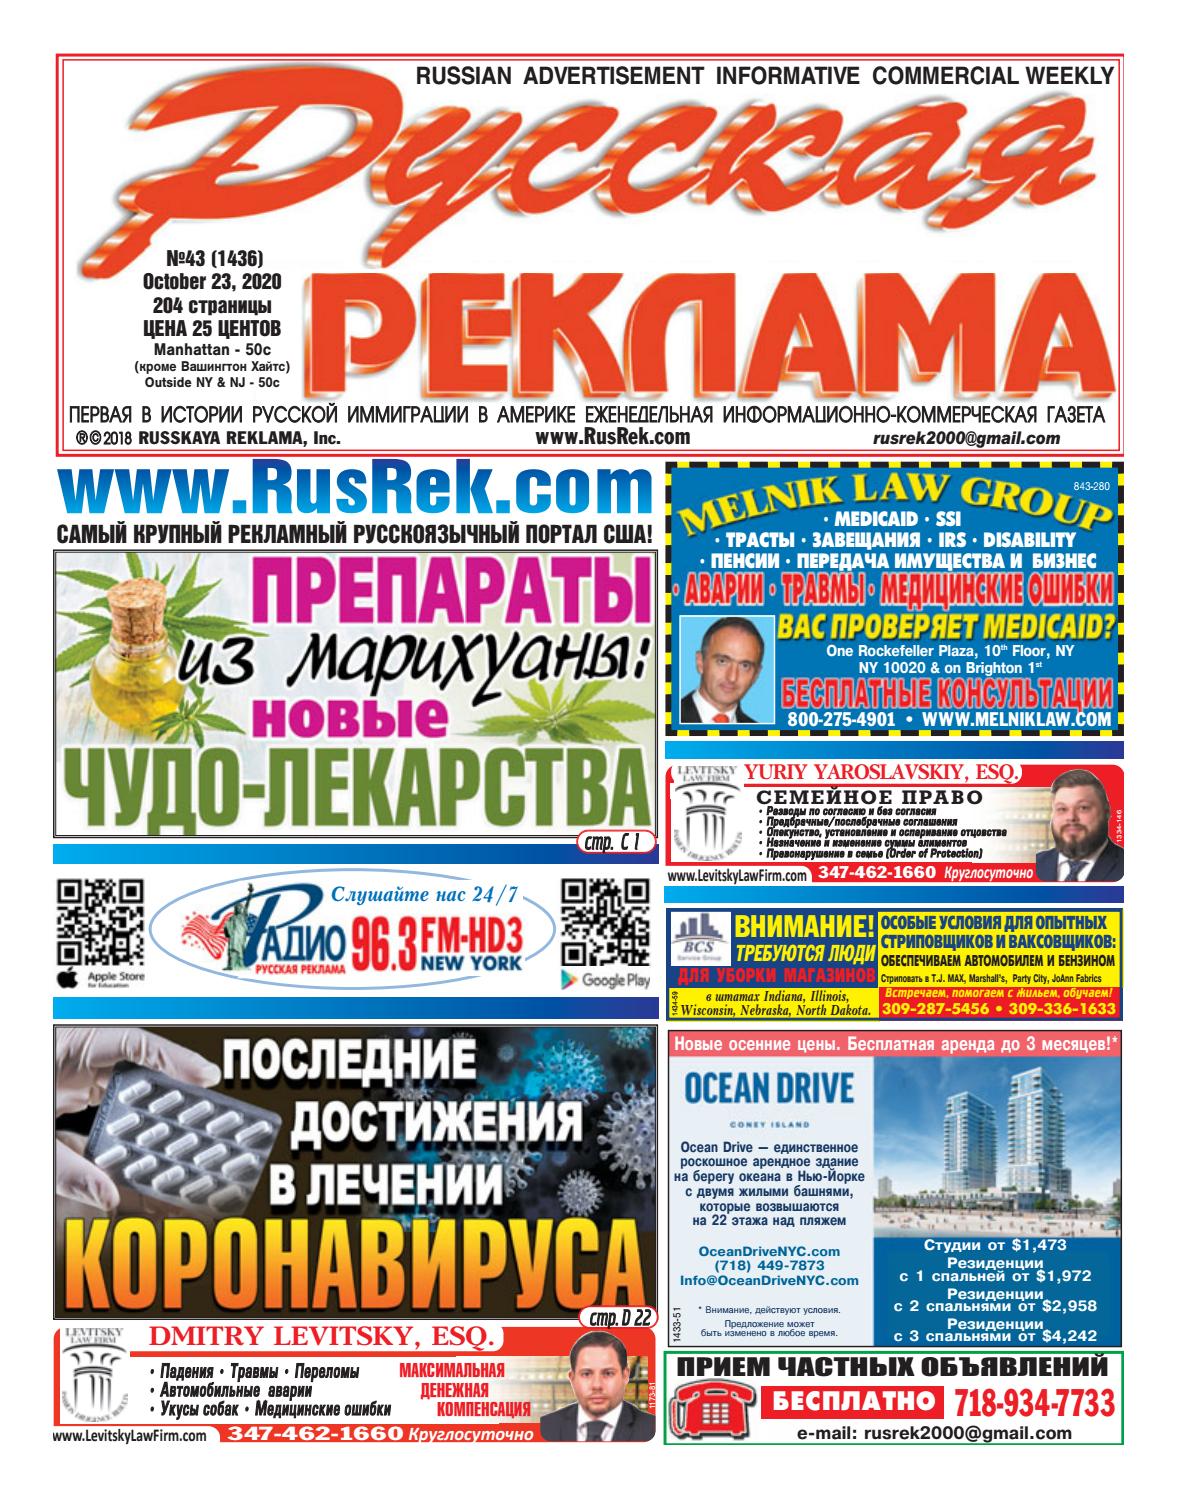 Русская реклама №43, октябрь 2020